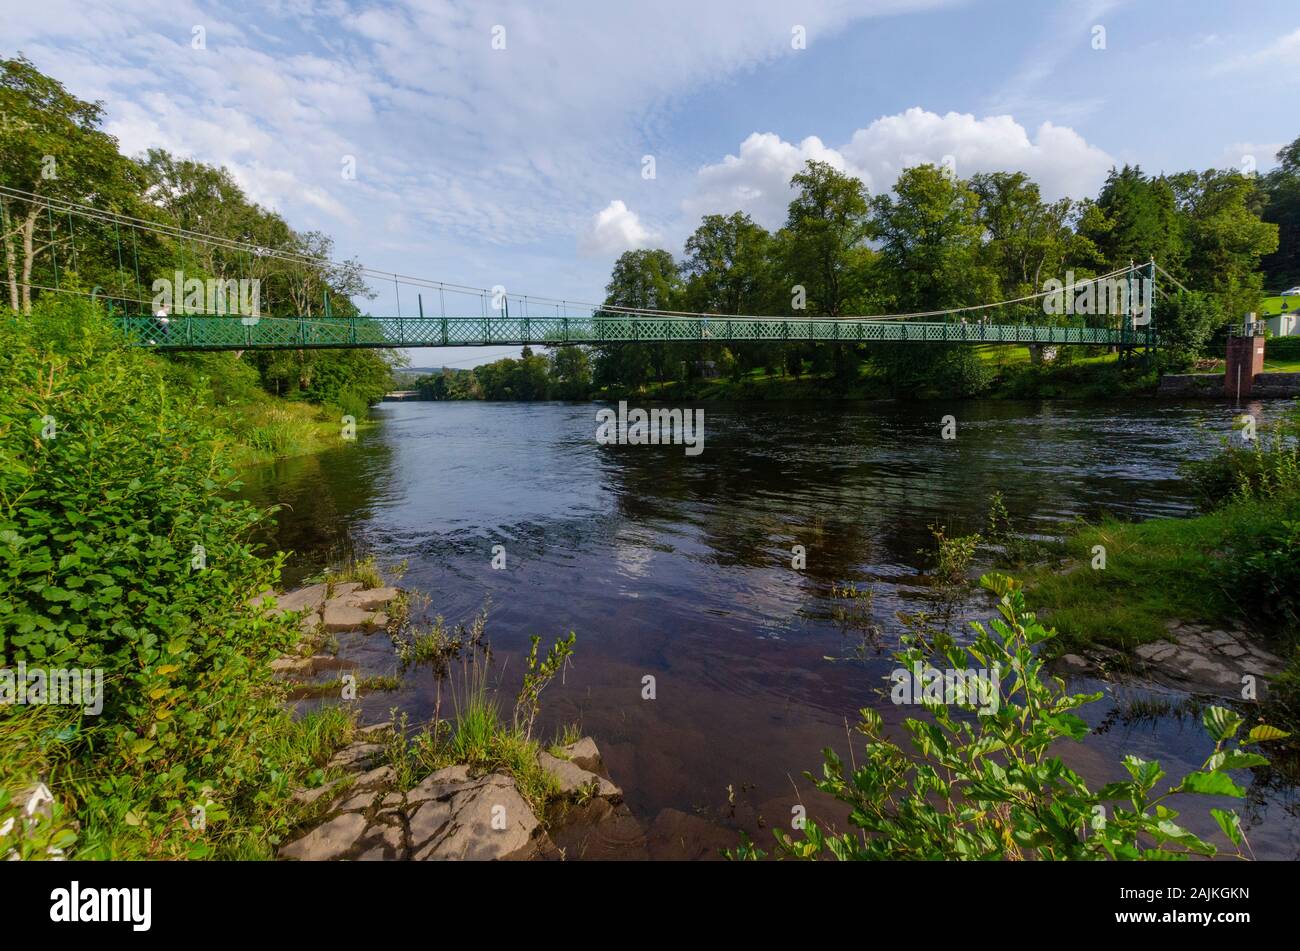 Fuß-Brücke über den Fluss Tay in Pitlochry Perthshire Schottland Großbritannien Stockfoto